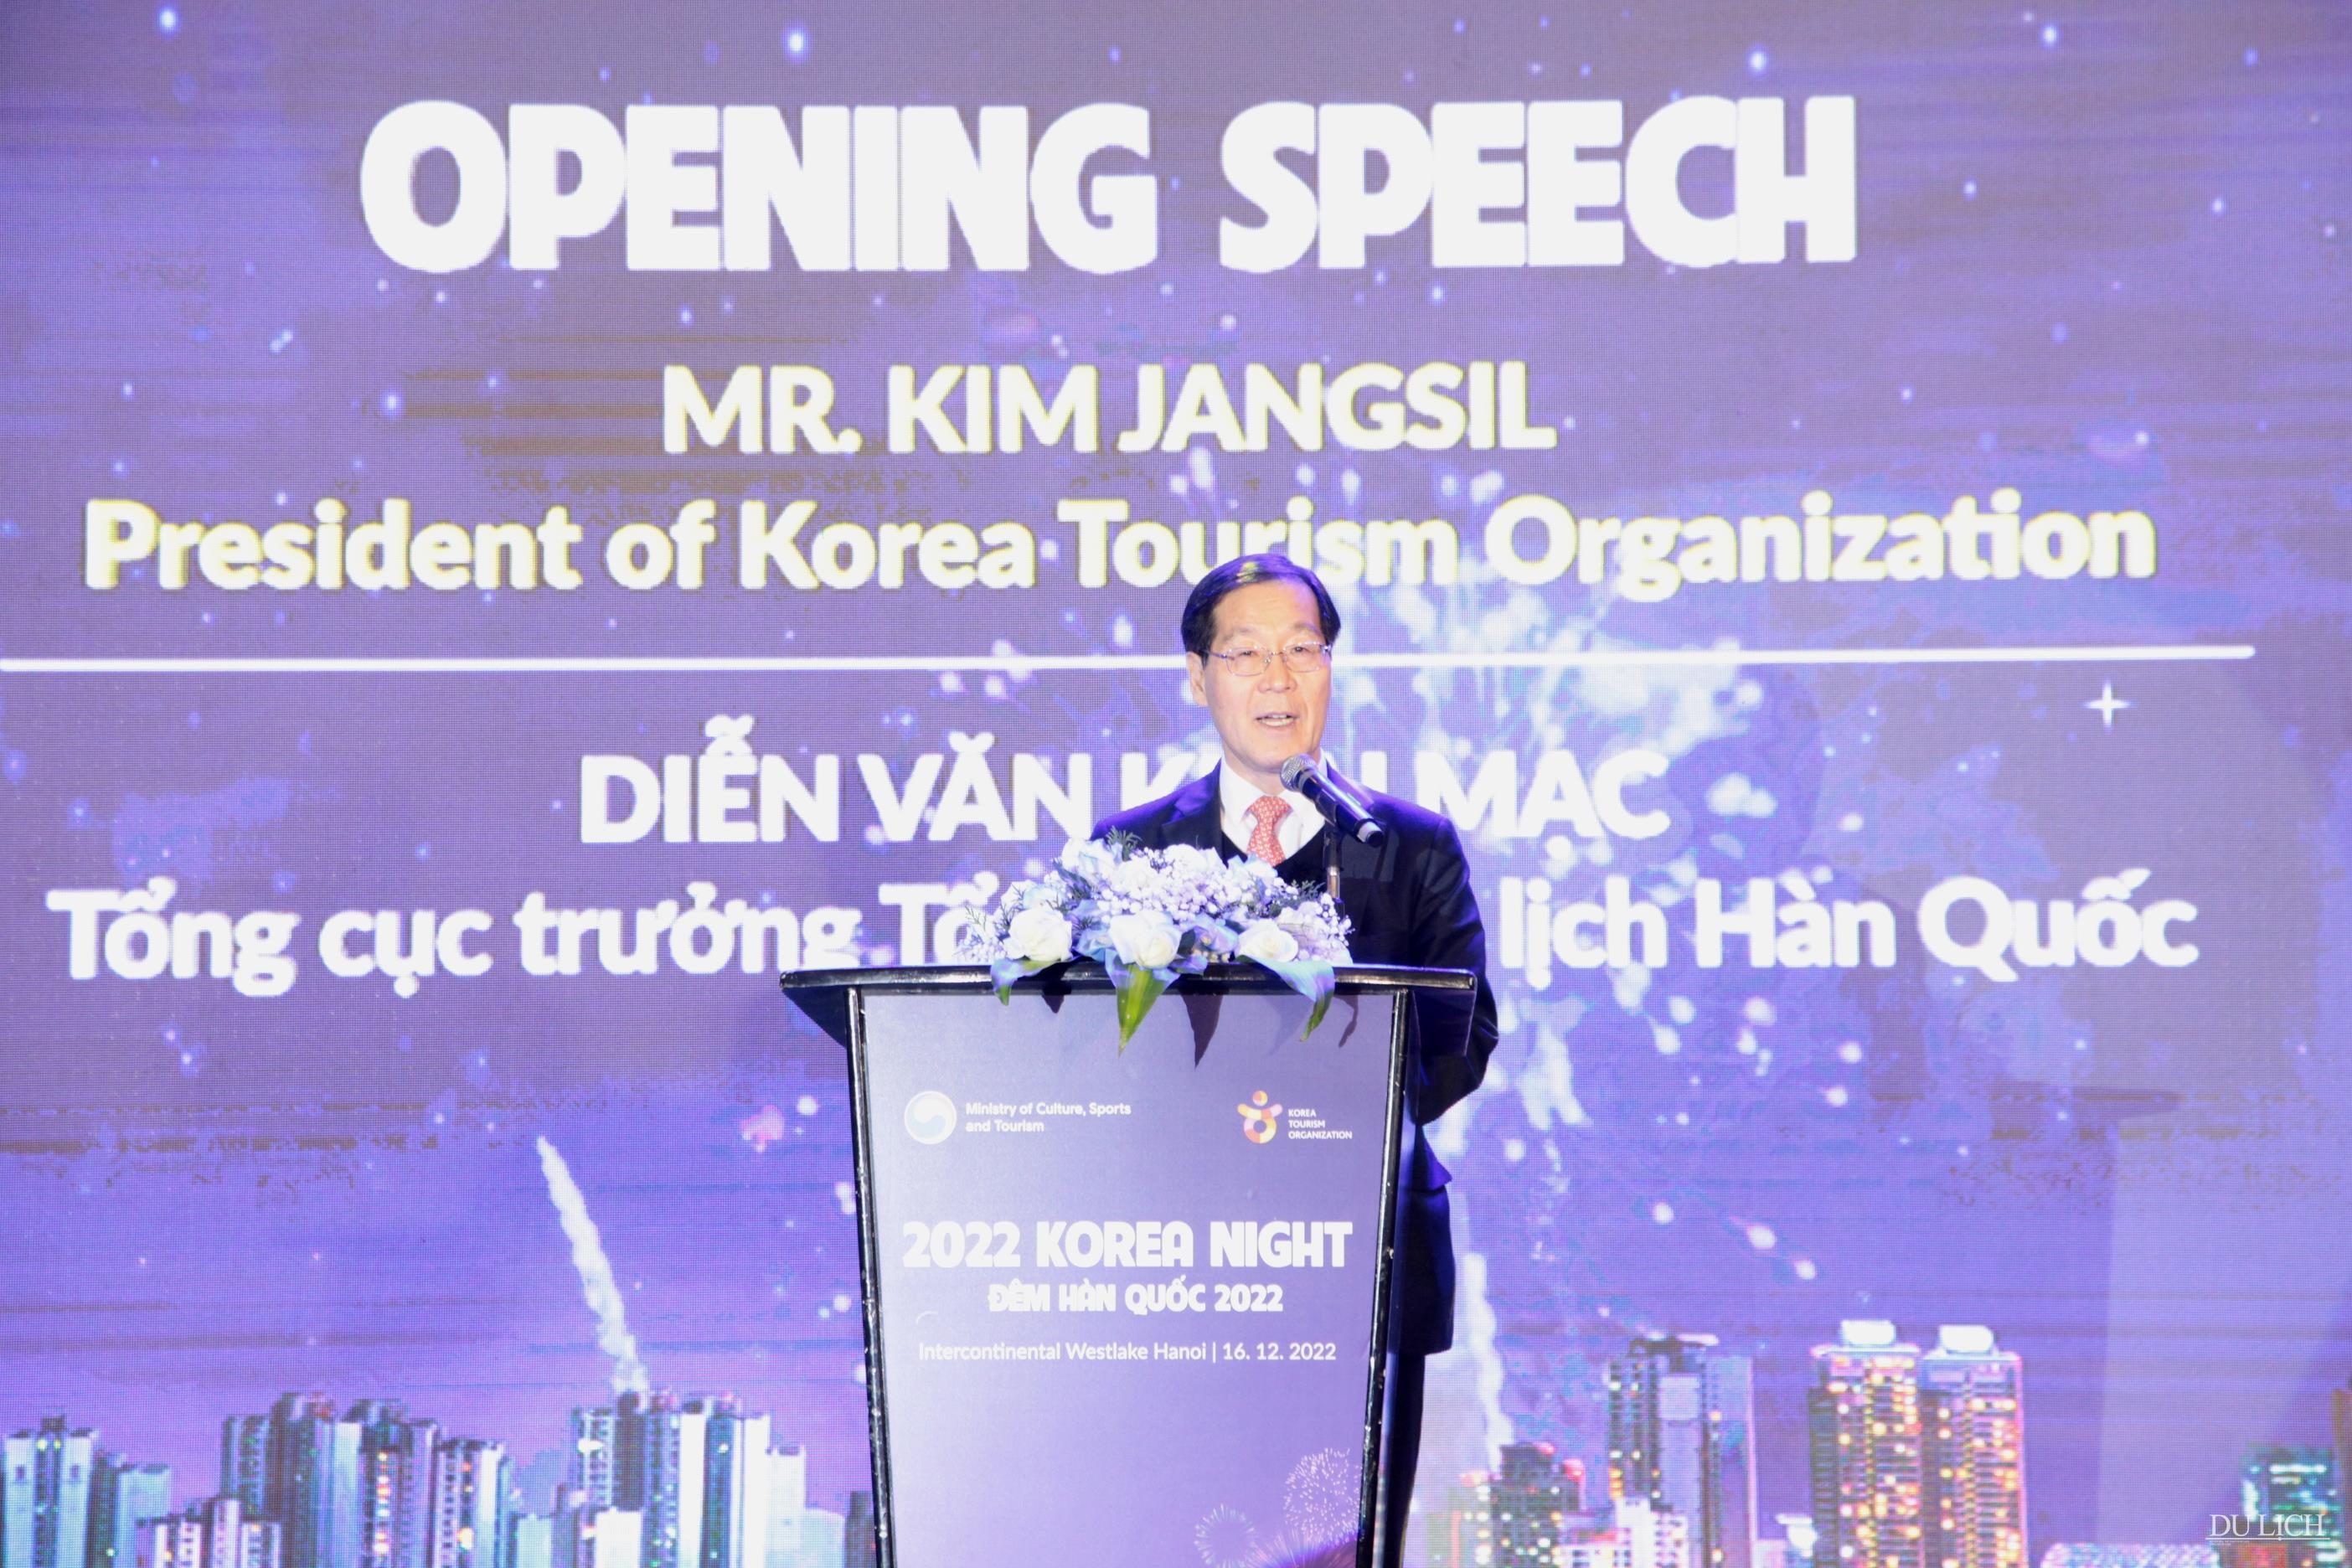 Tổng cục trưởng TCDL Hàn Quốc Kim Jang Sil phát biểu khai mạc chương trình